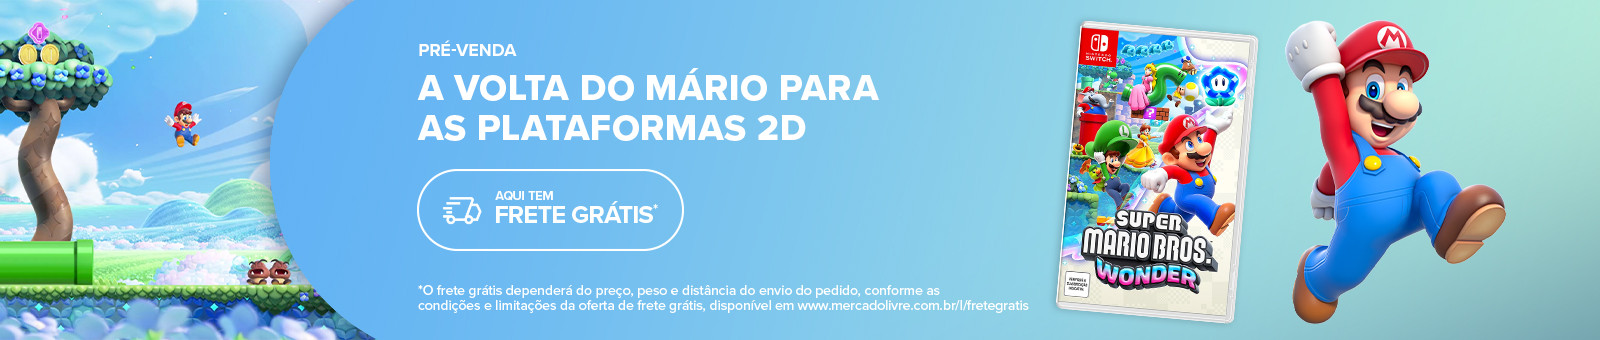 Pré-venda a volta do Mário para as plataformas 2D. Aqui tem frete grátis, consulte termos e condições.